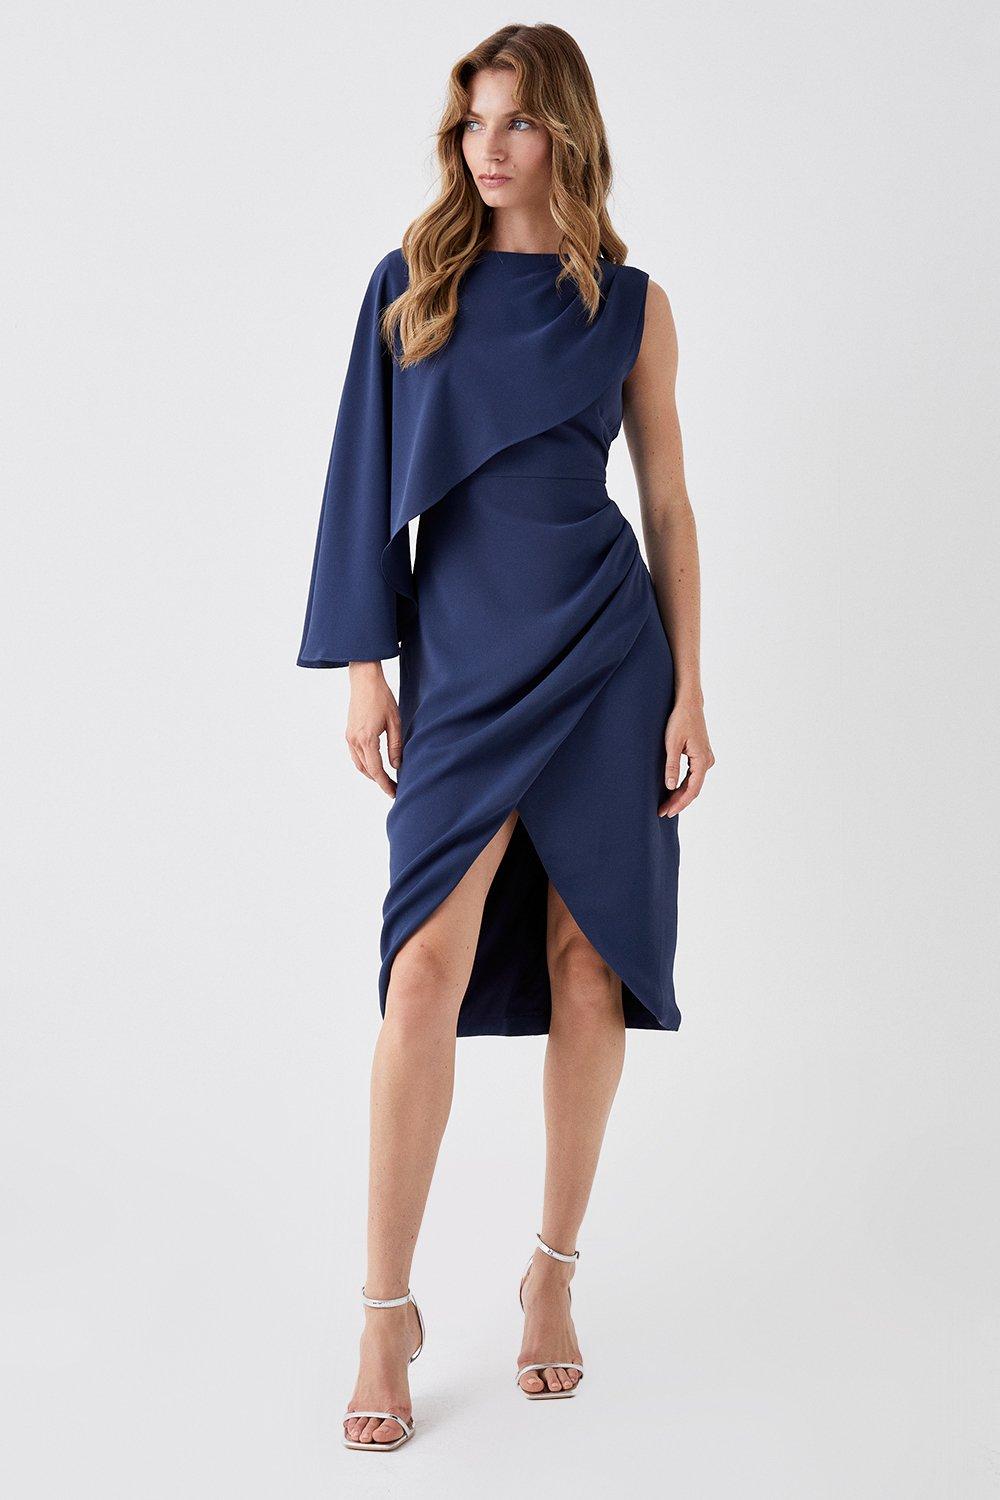 Asymmetric Cape Wrap Skirt Dress - Navy